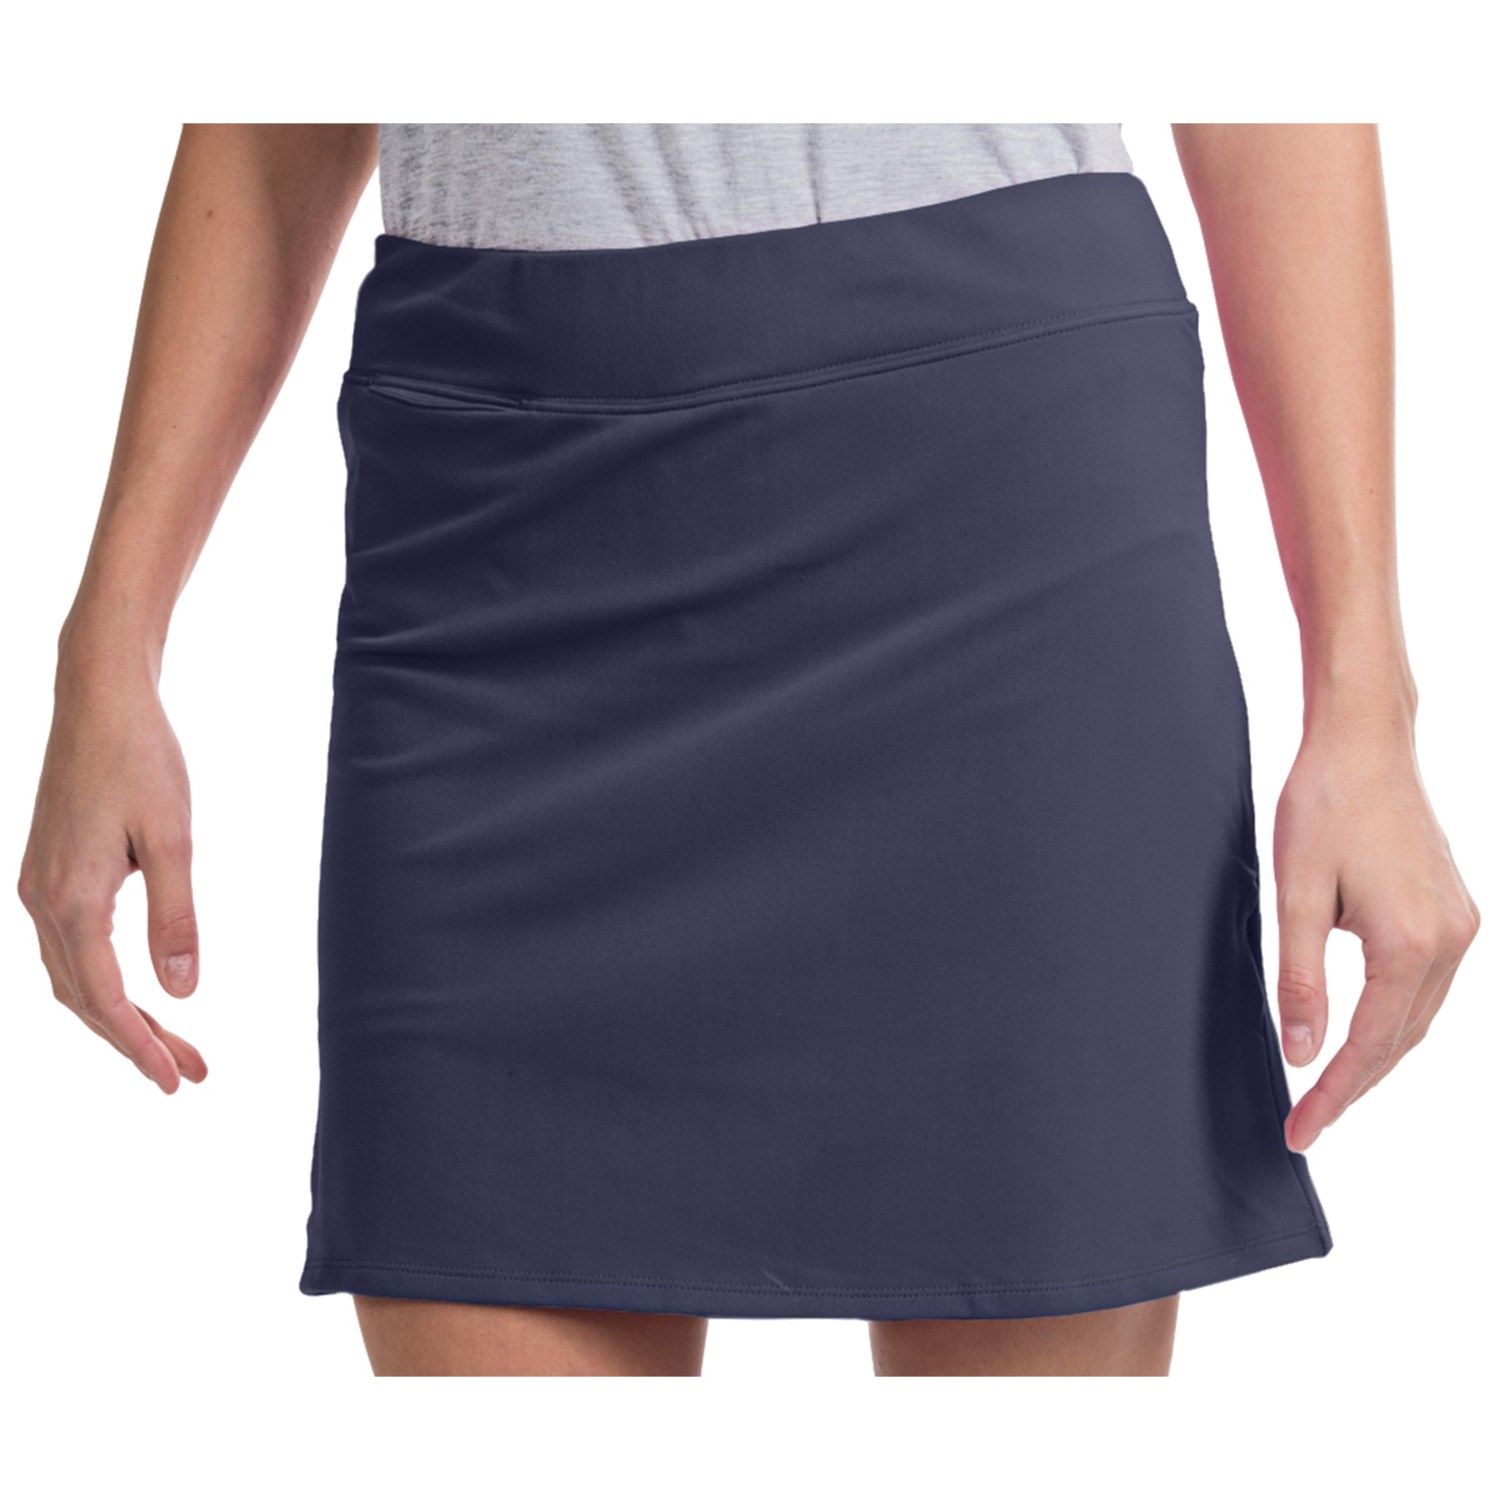 Adidas Golf ClimaLite® Range Wear Skort (For Women) - Save 30%